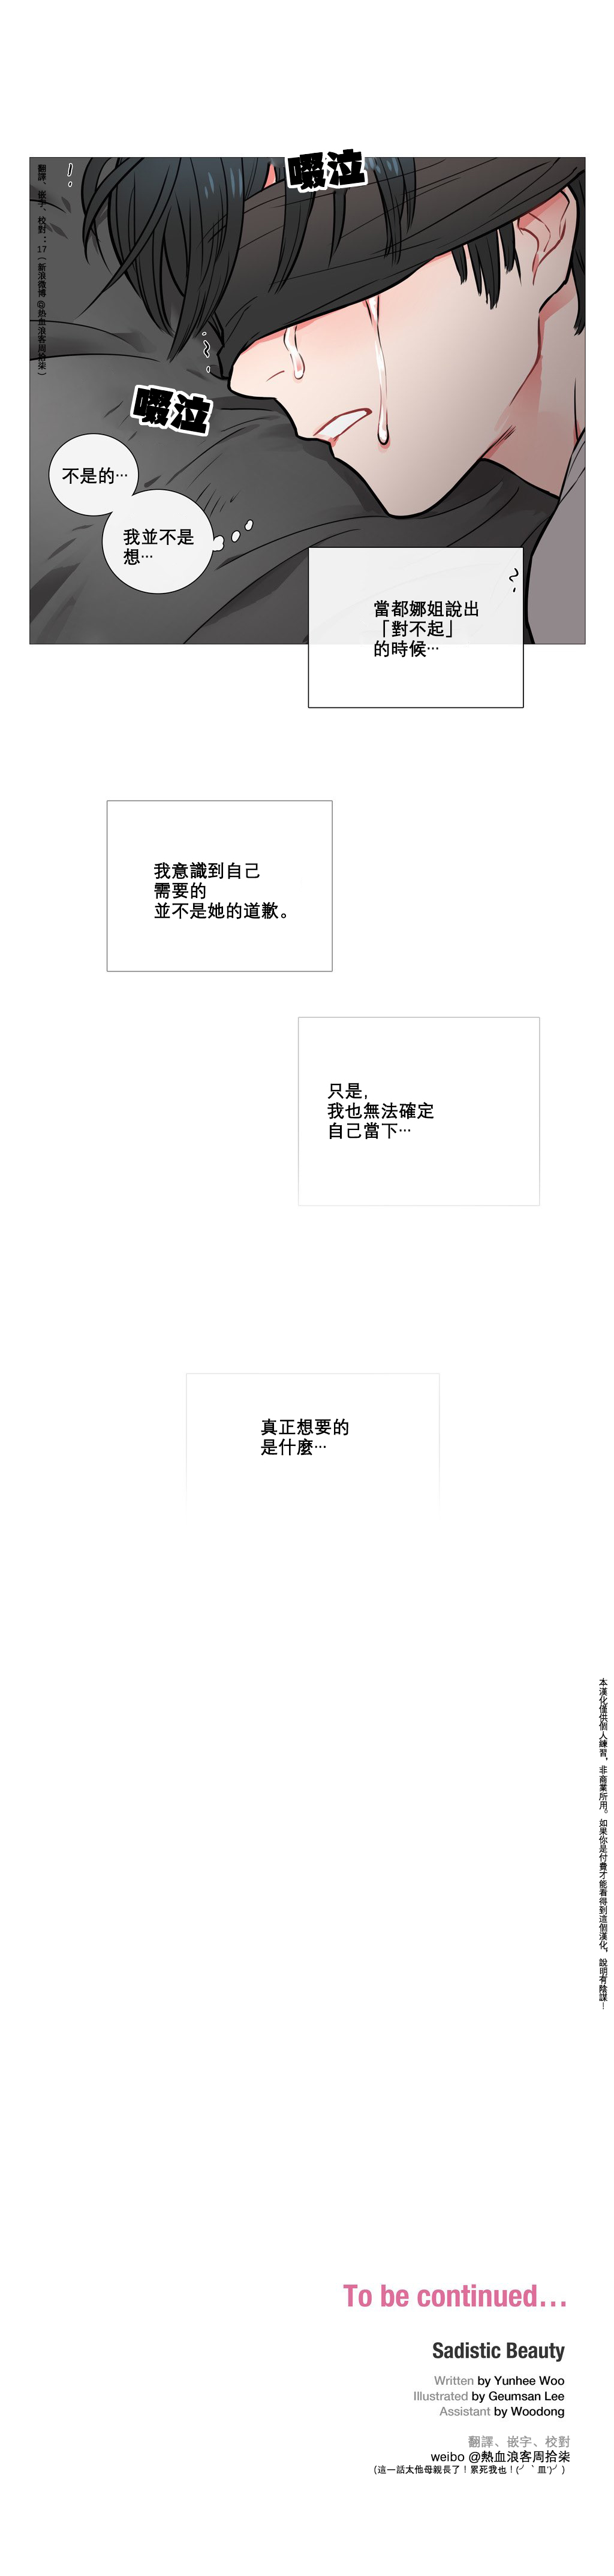 【ジンシャン】サディスティックビューティーCh.1-27【中国語】【17汉化】